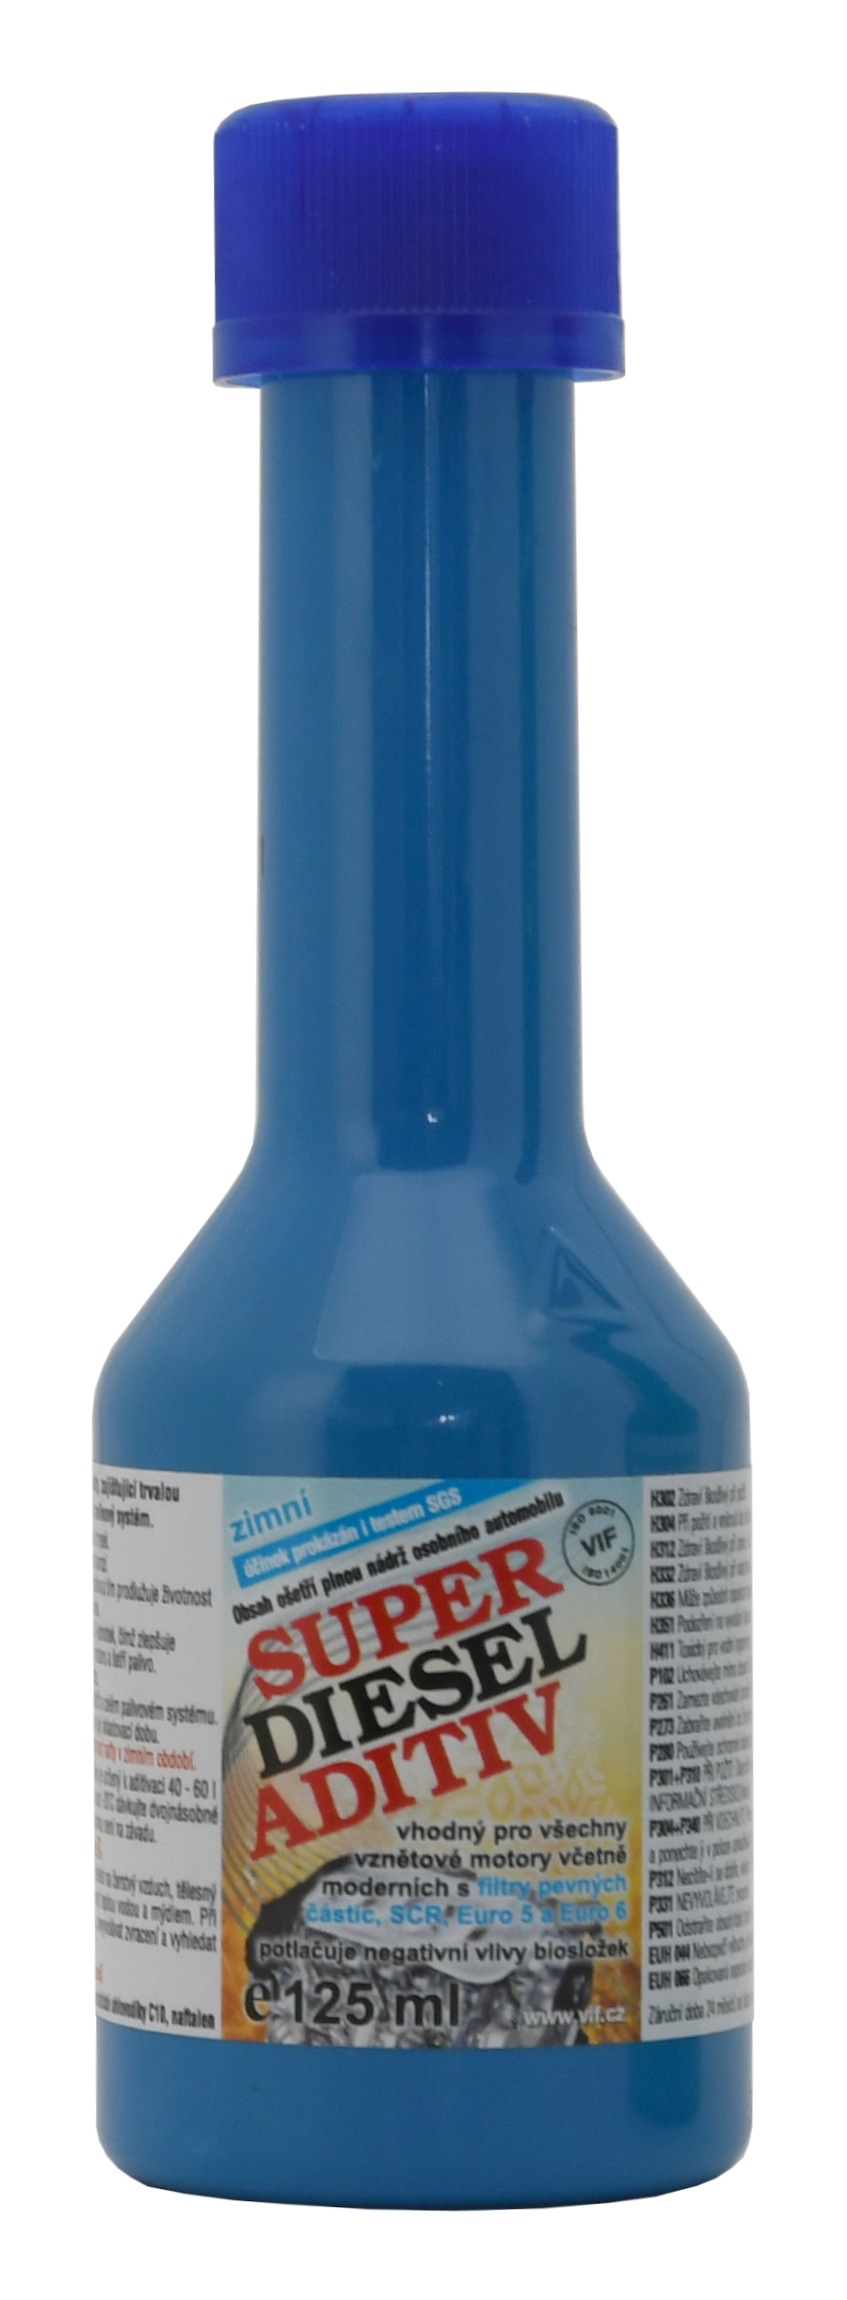 Aditivum do nafty VIF (zimní) 125 ml am18127